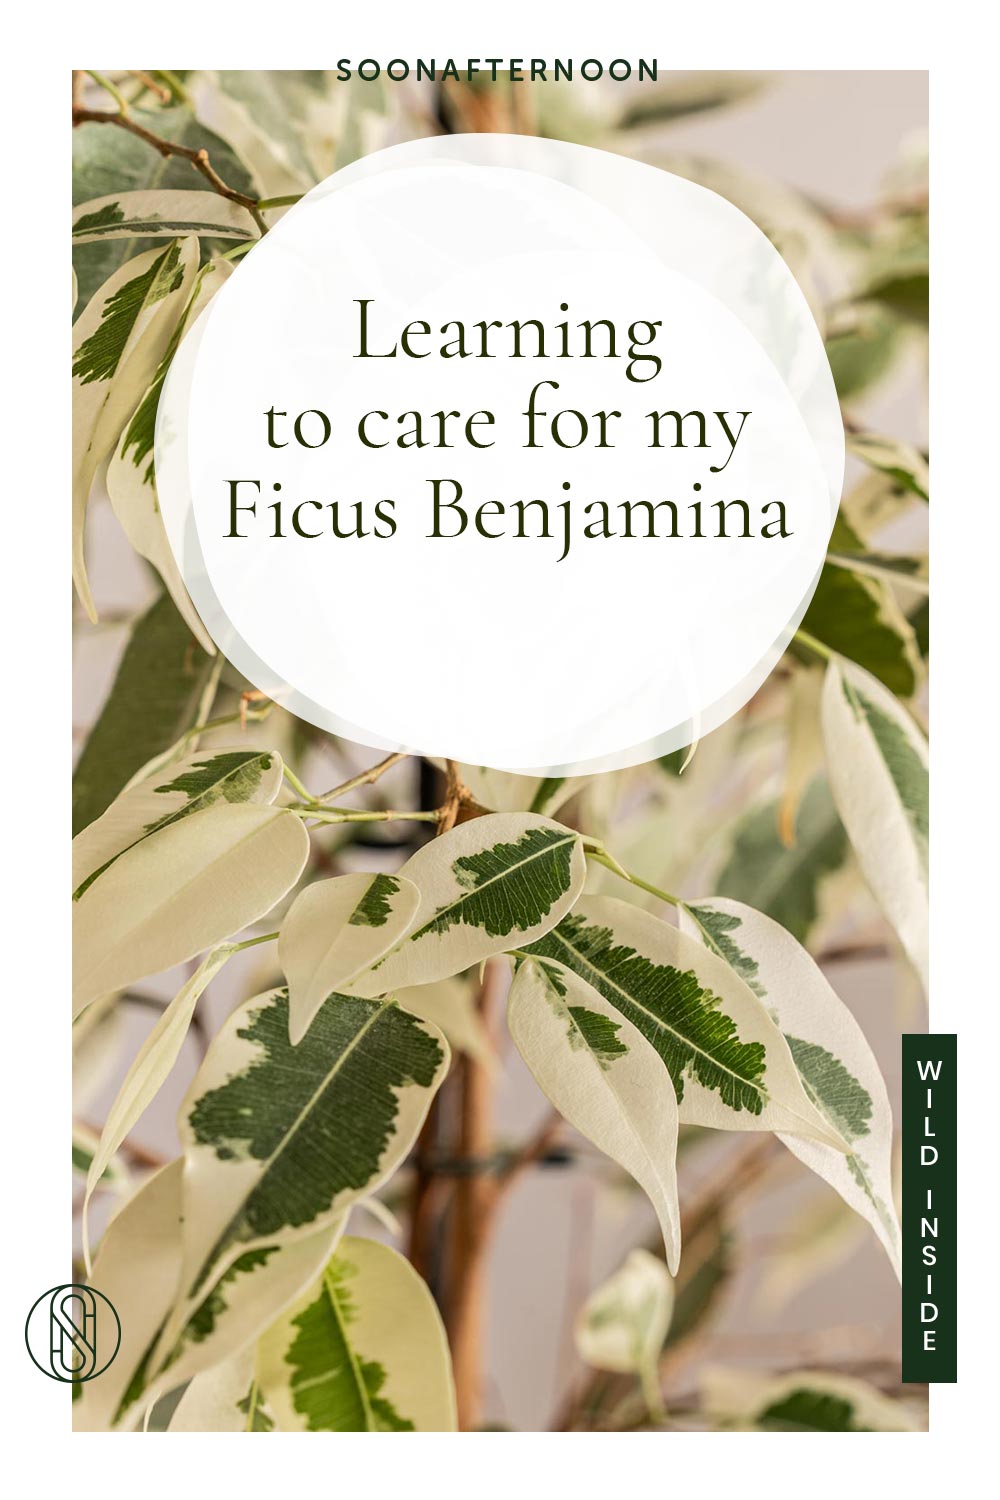 Caring for your Ficus Benjamina